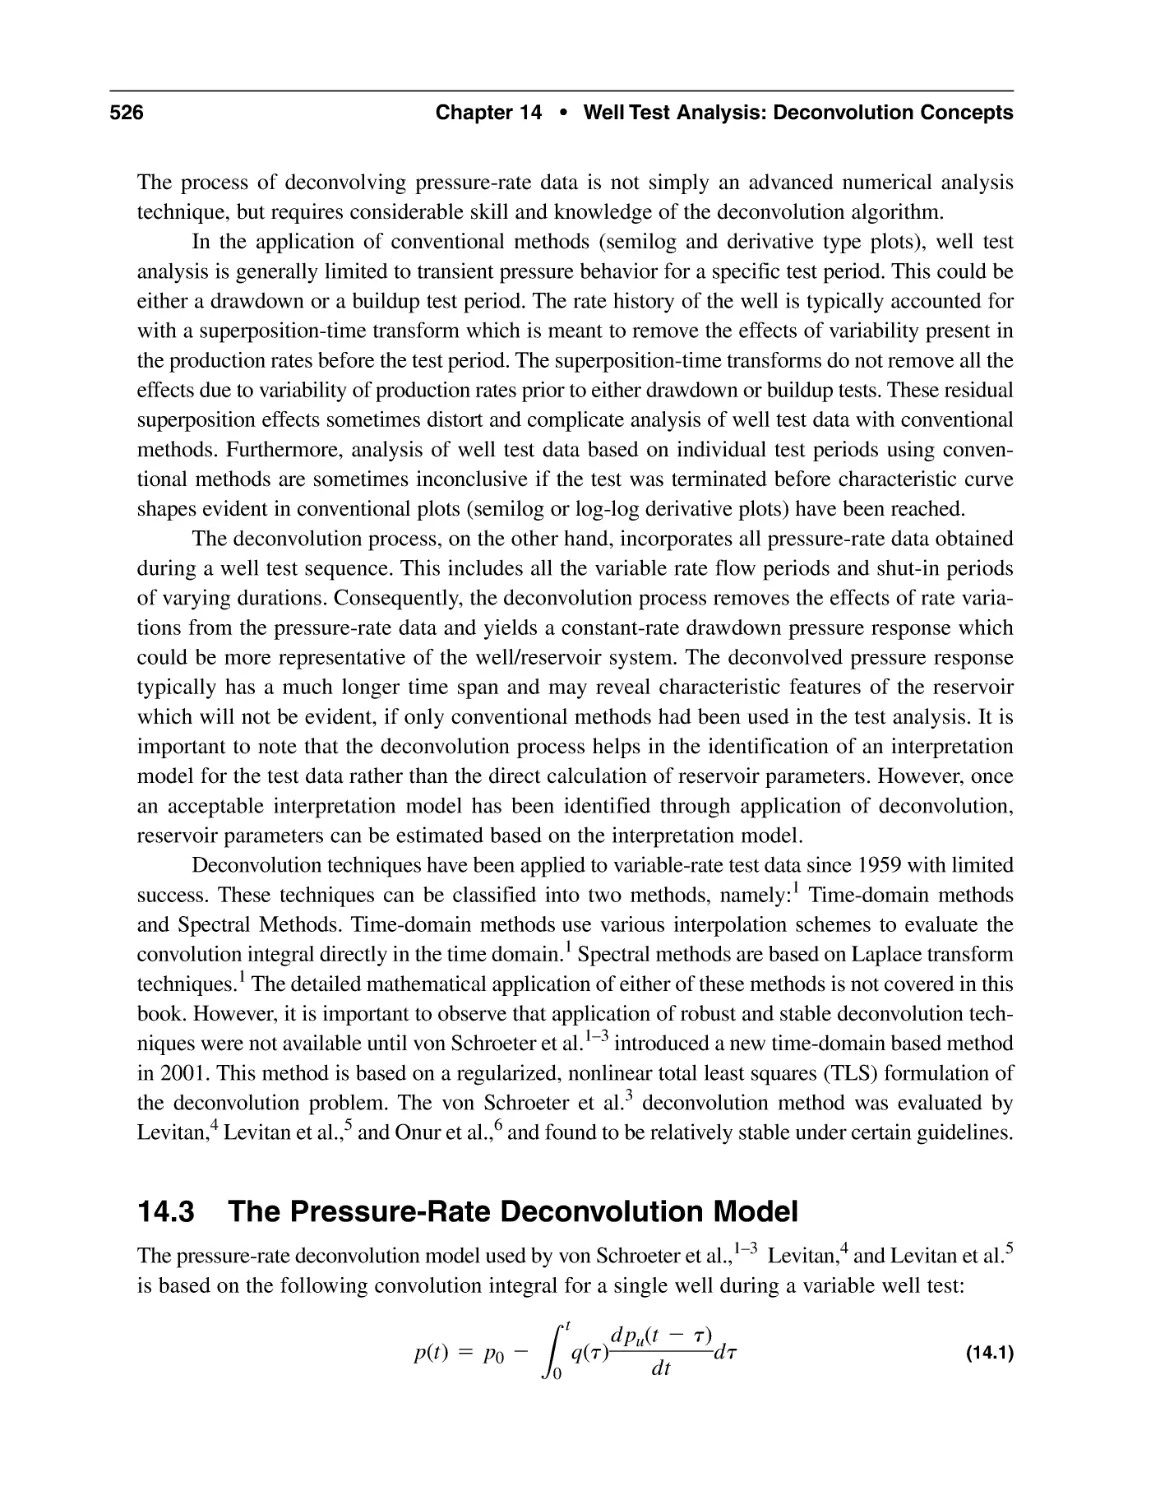 14.3 The Pressure-Rate Deconvolution Model